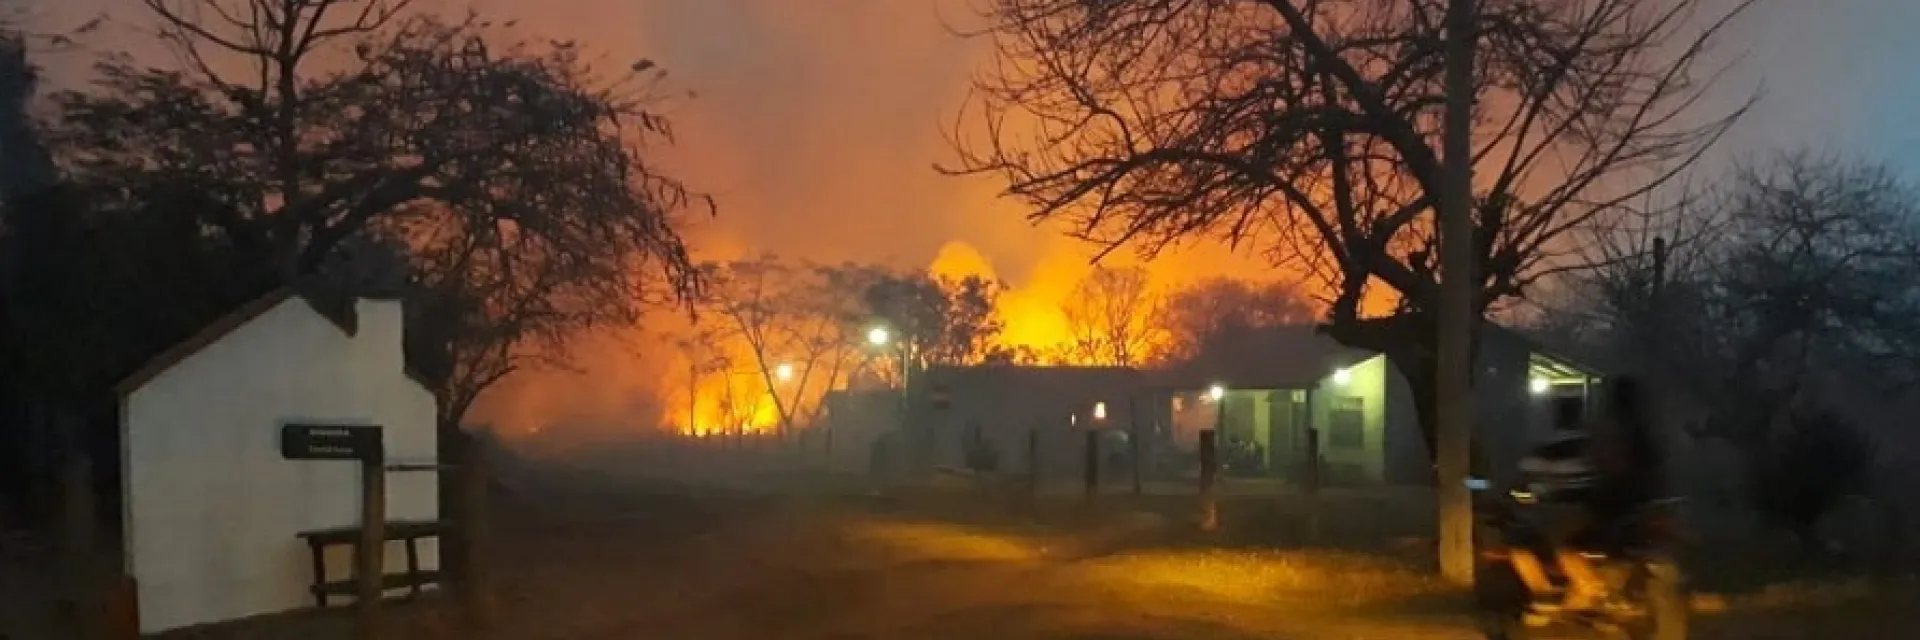 Fires burning behind buildings